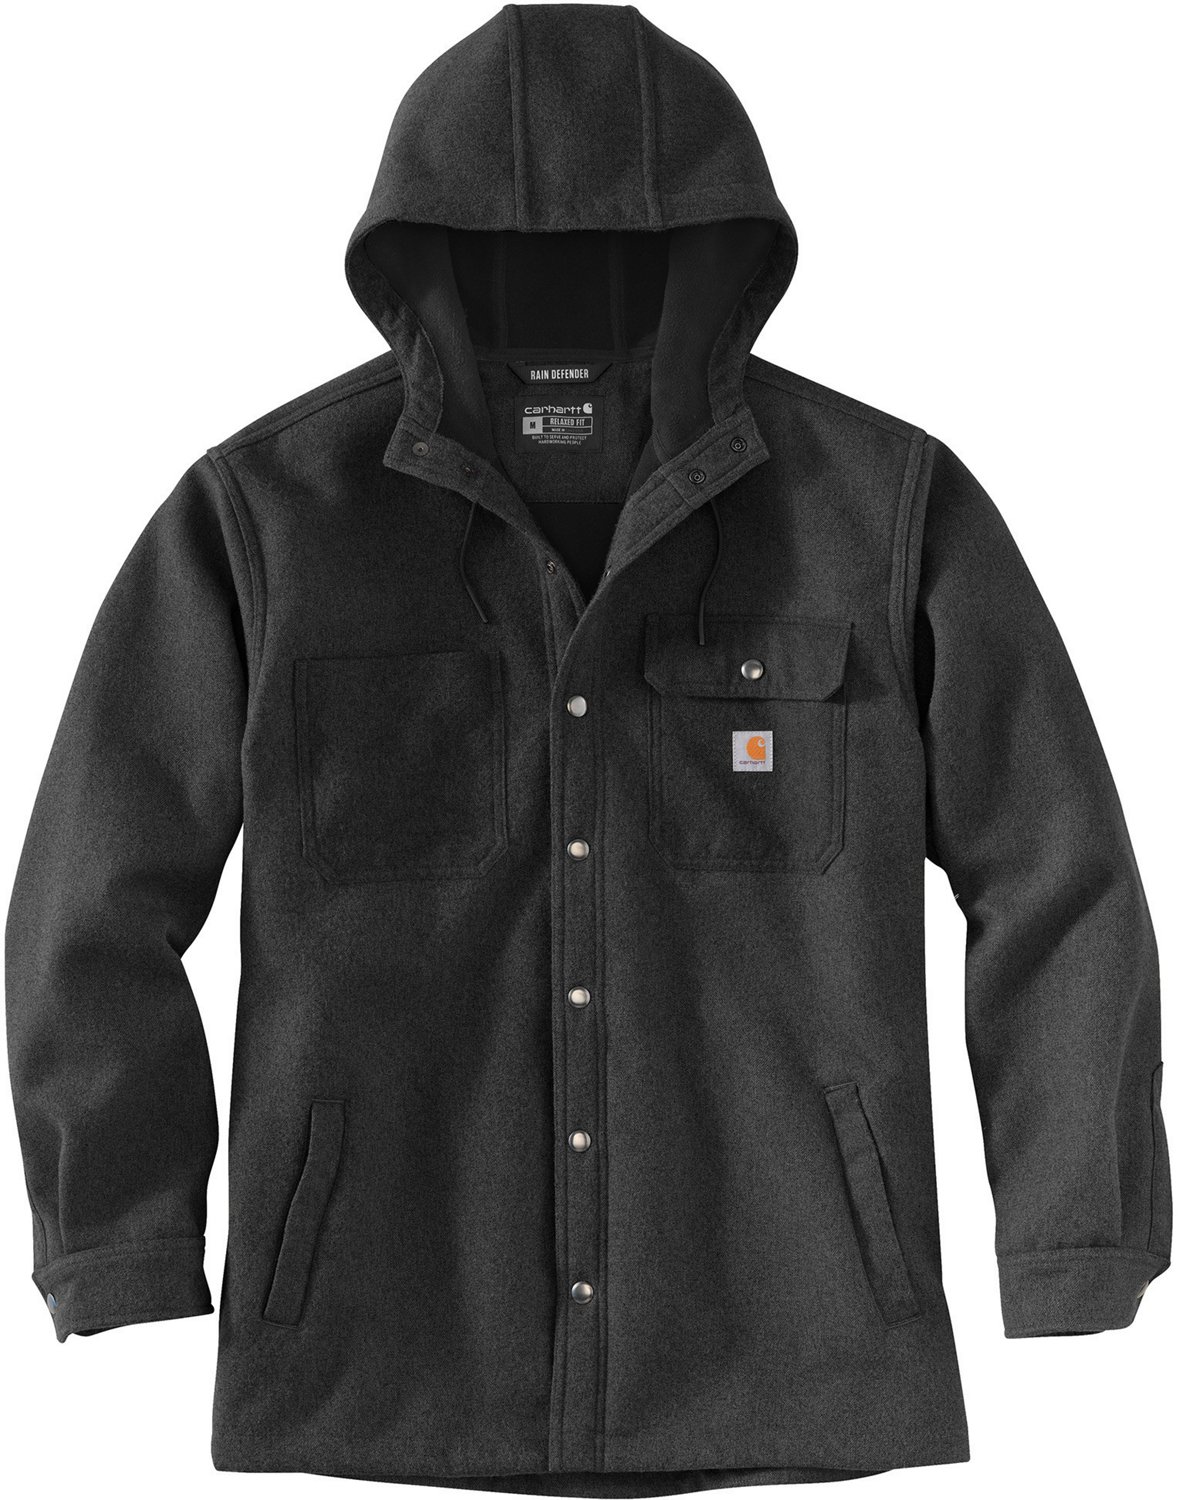 Carhartt Men's Rain Defender Hooded Shirt Jacket